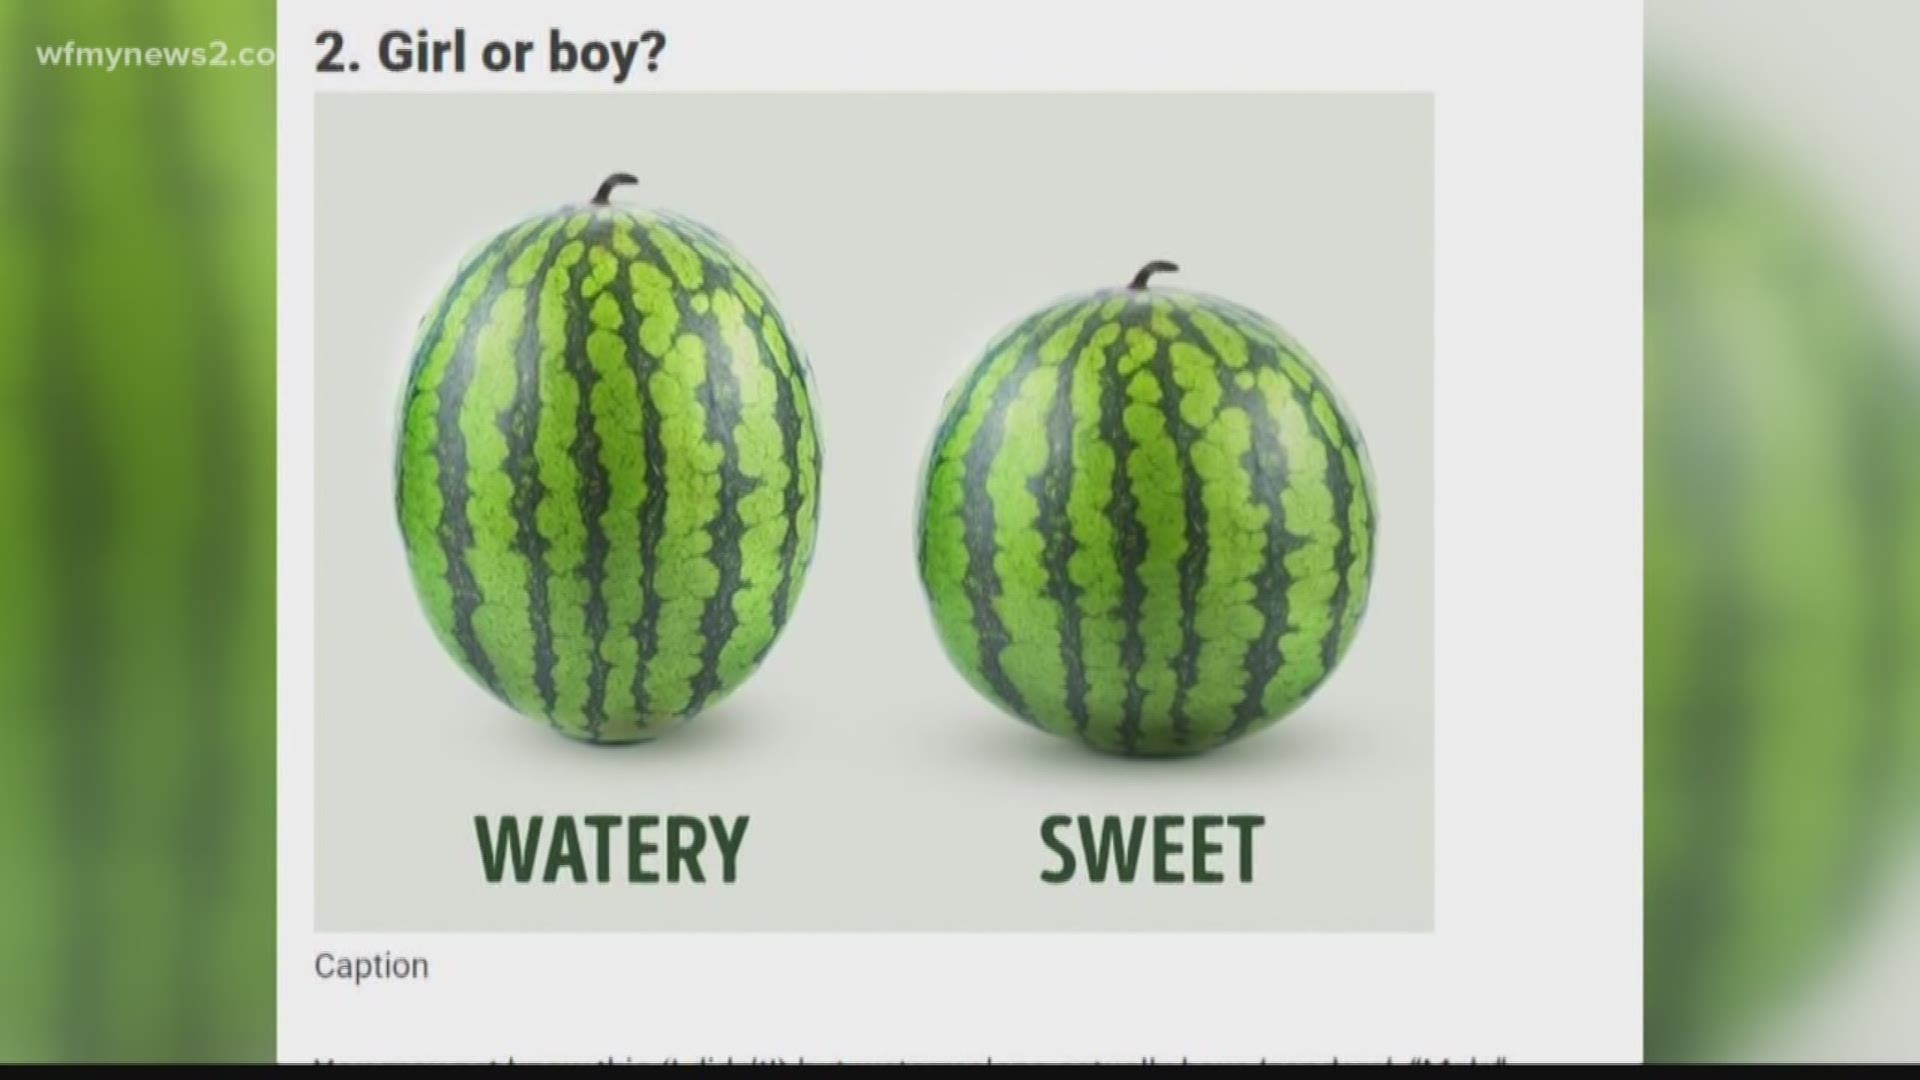 Verify: Boy vs Girl Watermelons?